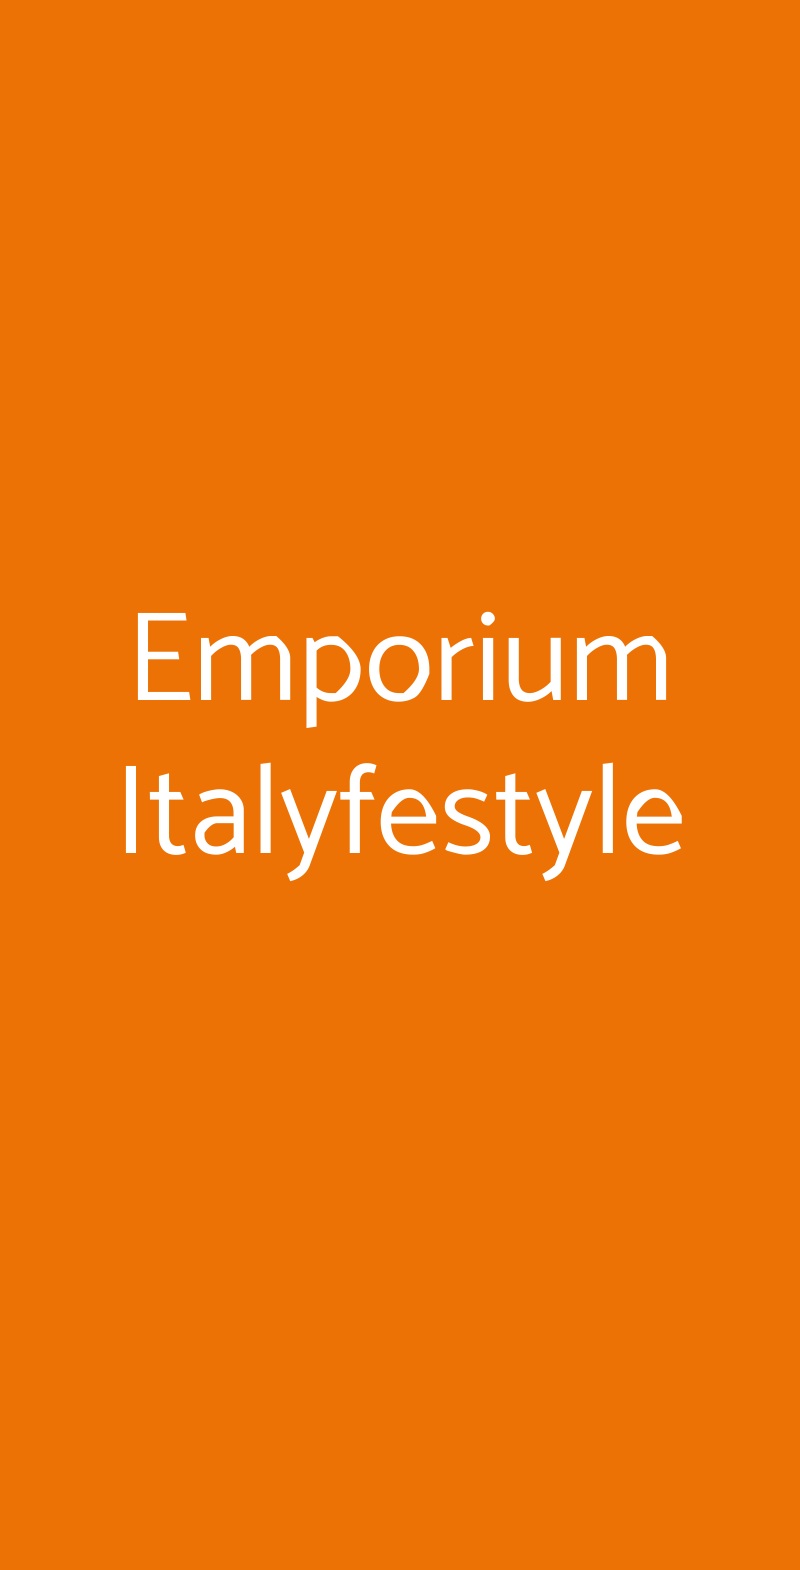 Emporium Italyfestyle Torino menù 1 pagina